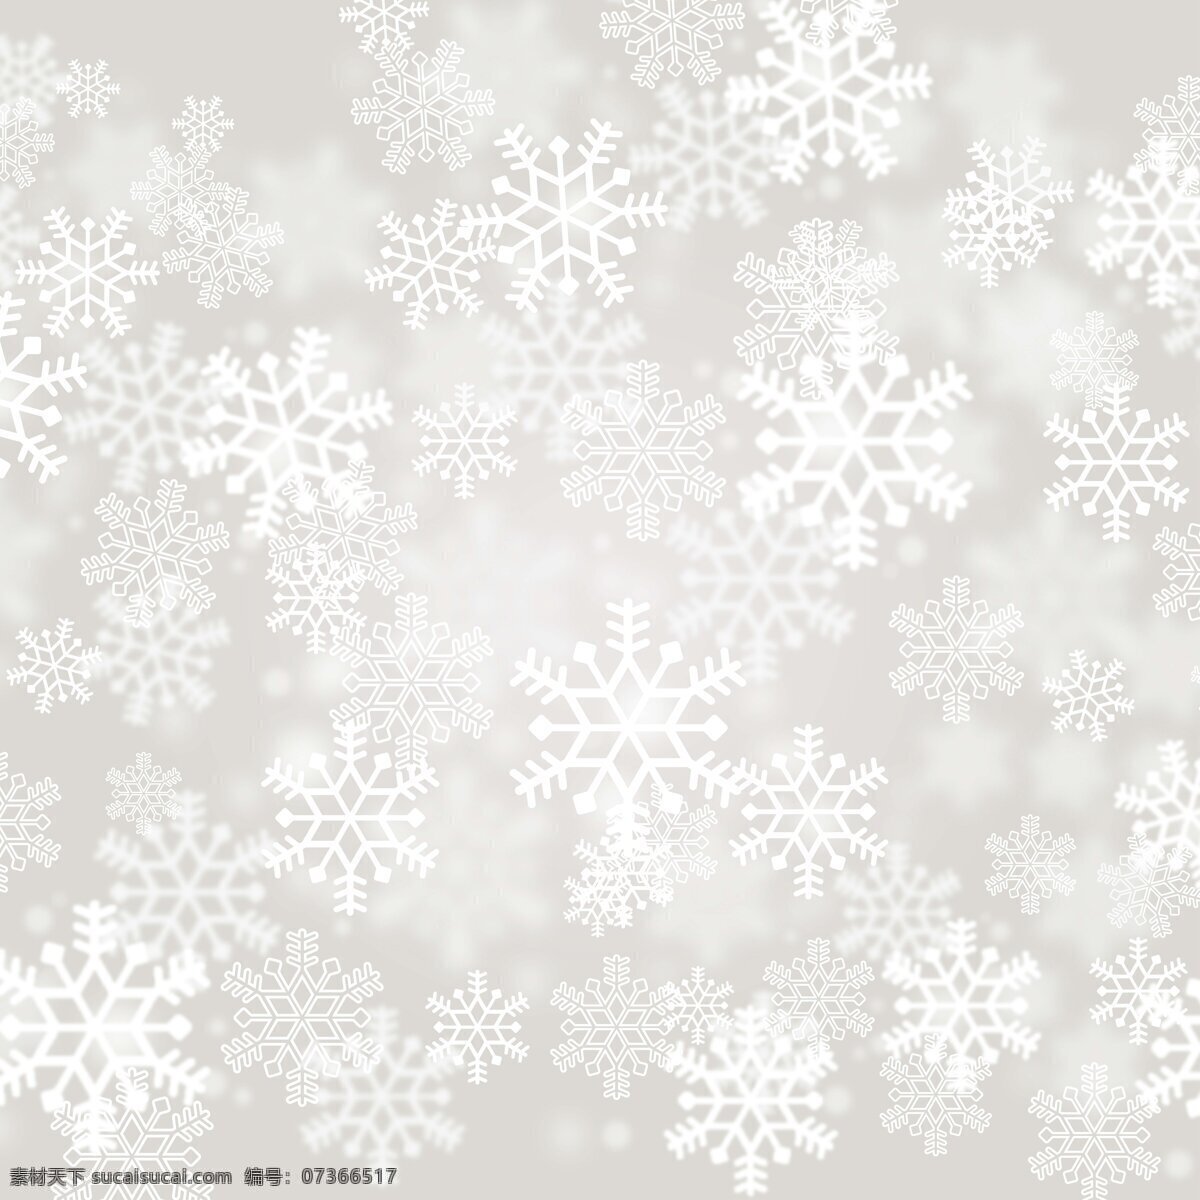 雪花壁纸 雪花 下雪背景 雪花背景 高清 图片壁纸